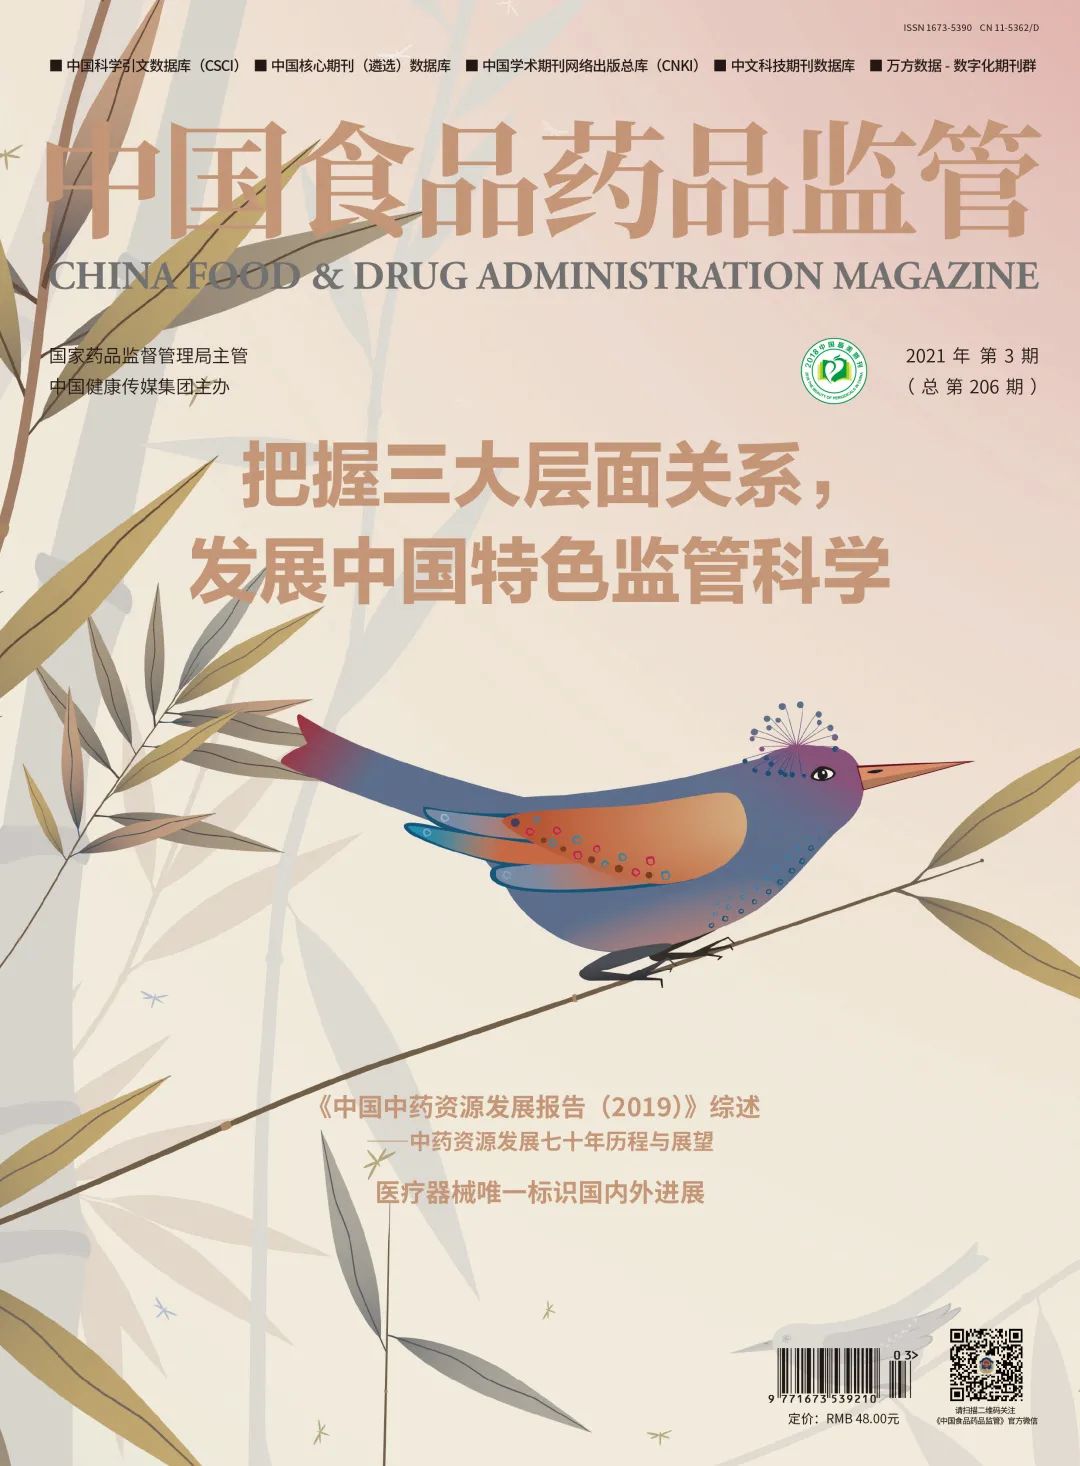 速览|《中国食品药品监管》杂志2021年第3期